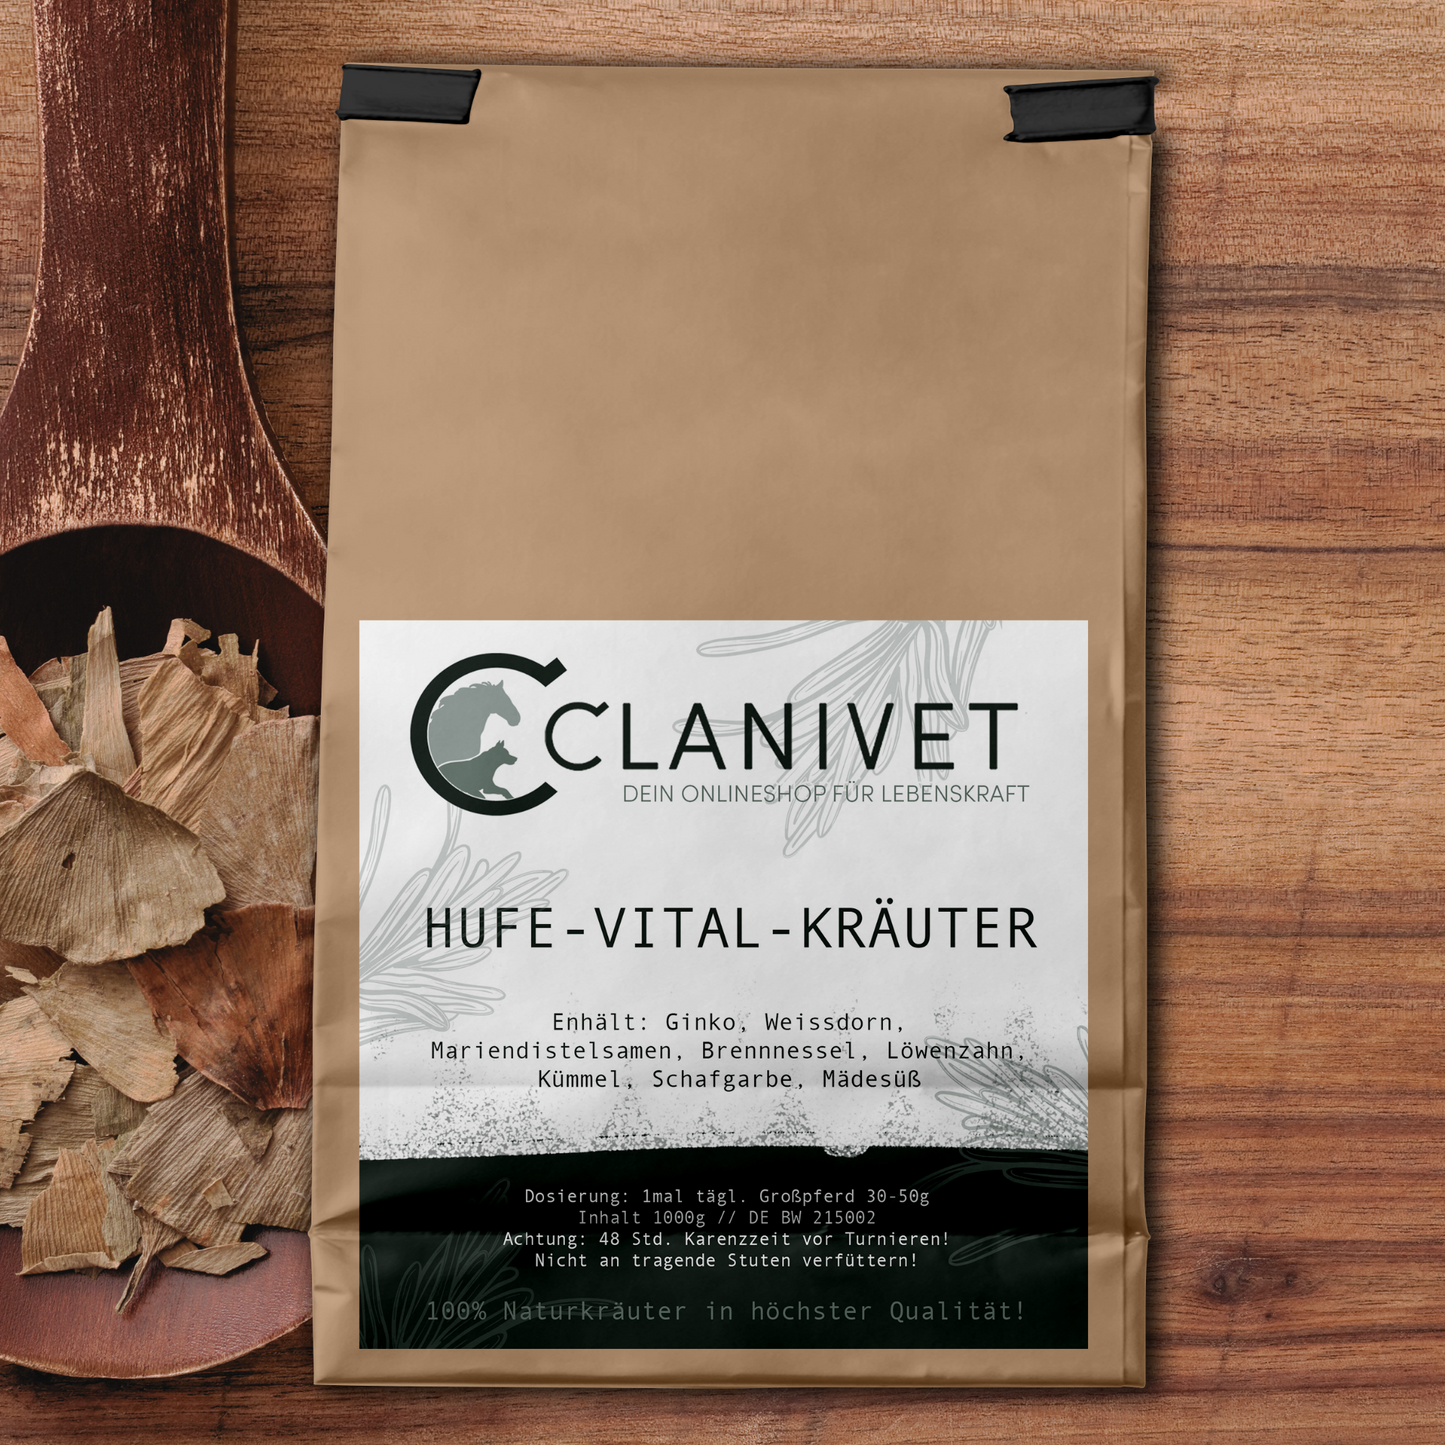 Clanivet Hufe-Vital-Kräuter